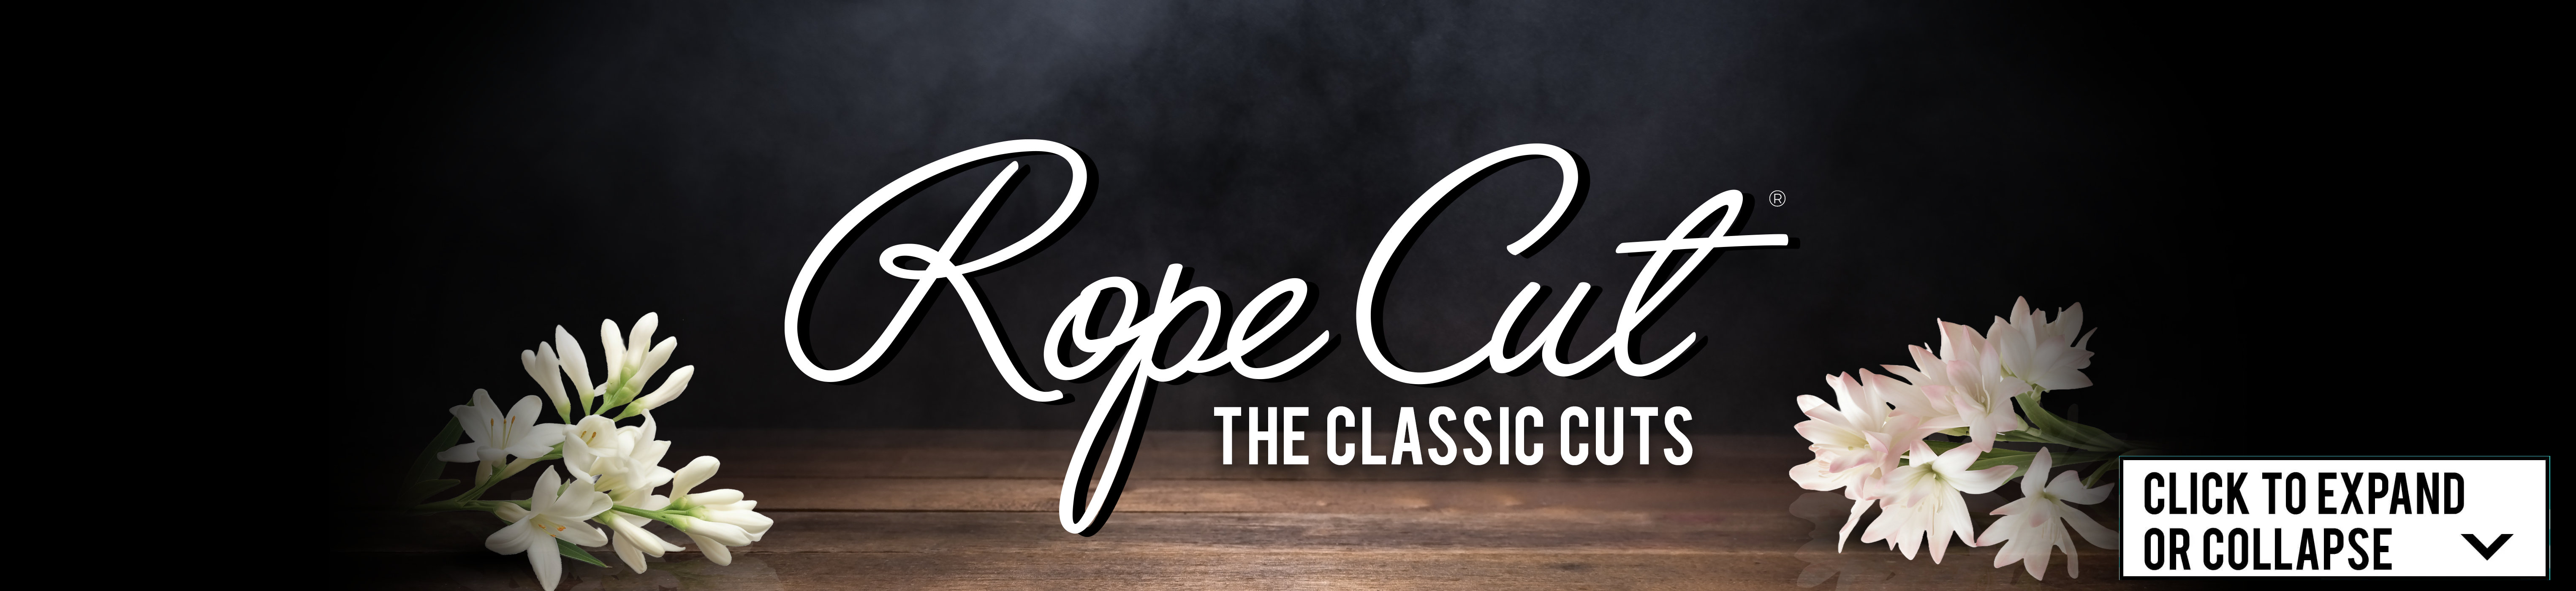 Rope Cut The Classic Cuts